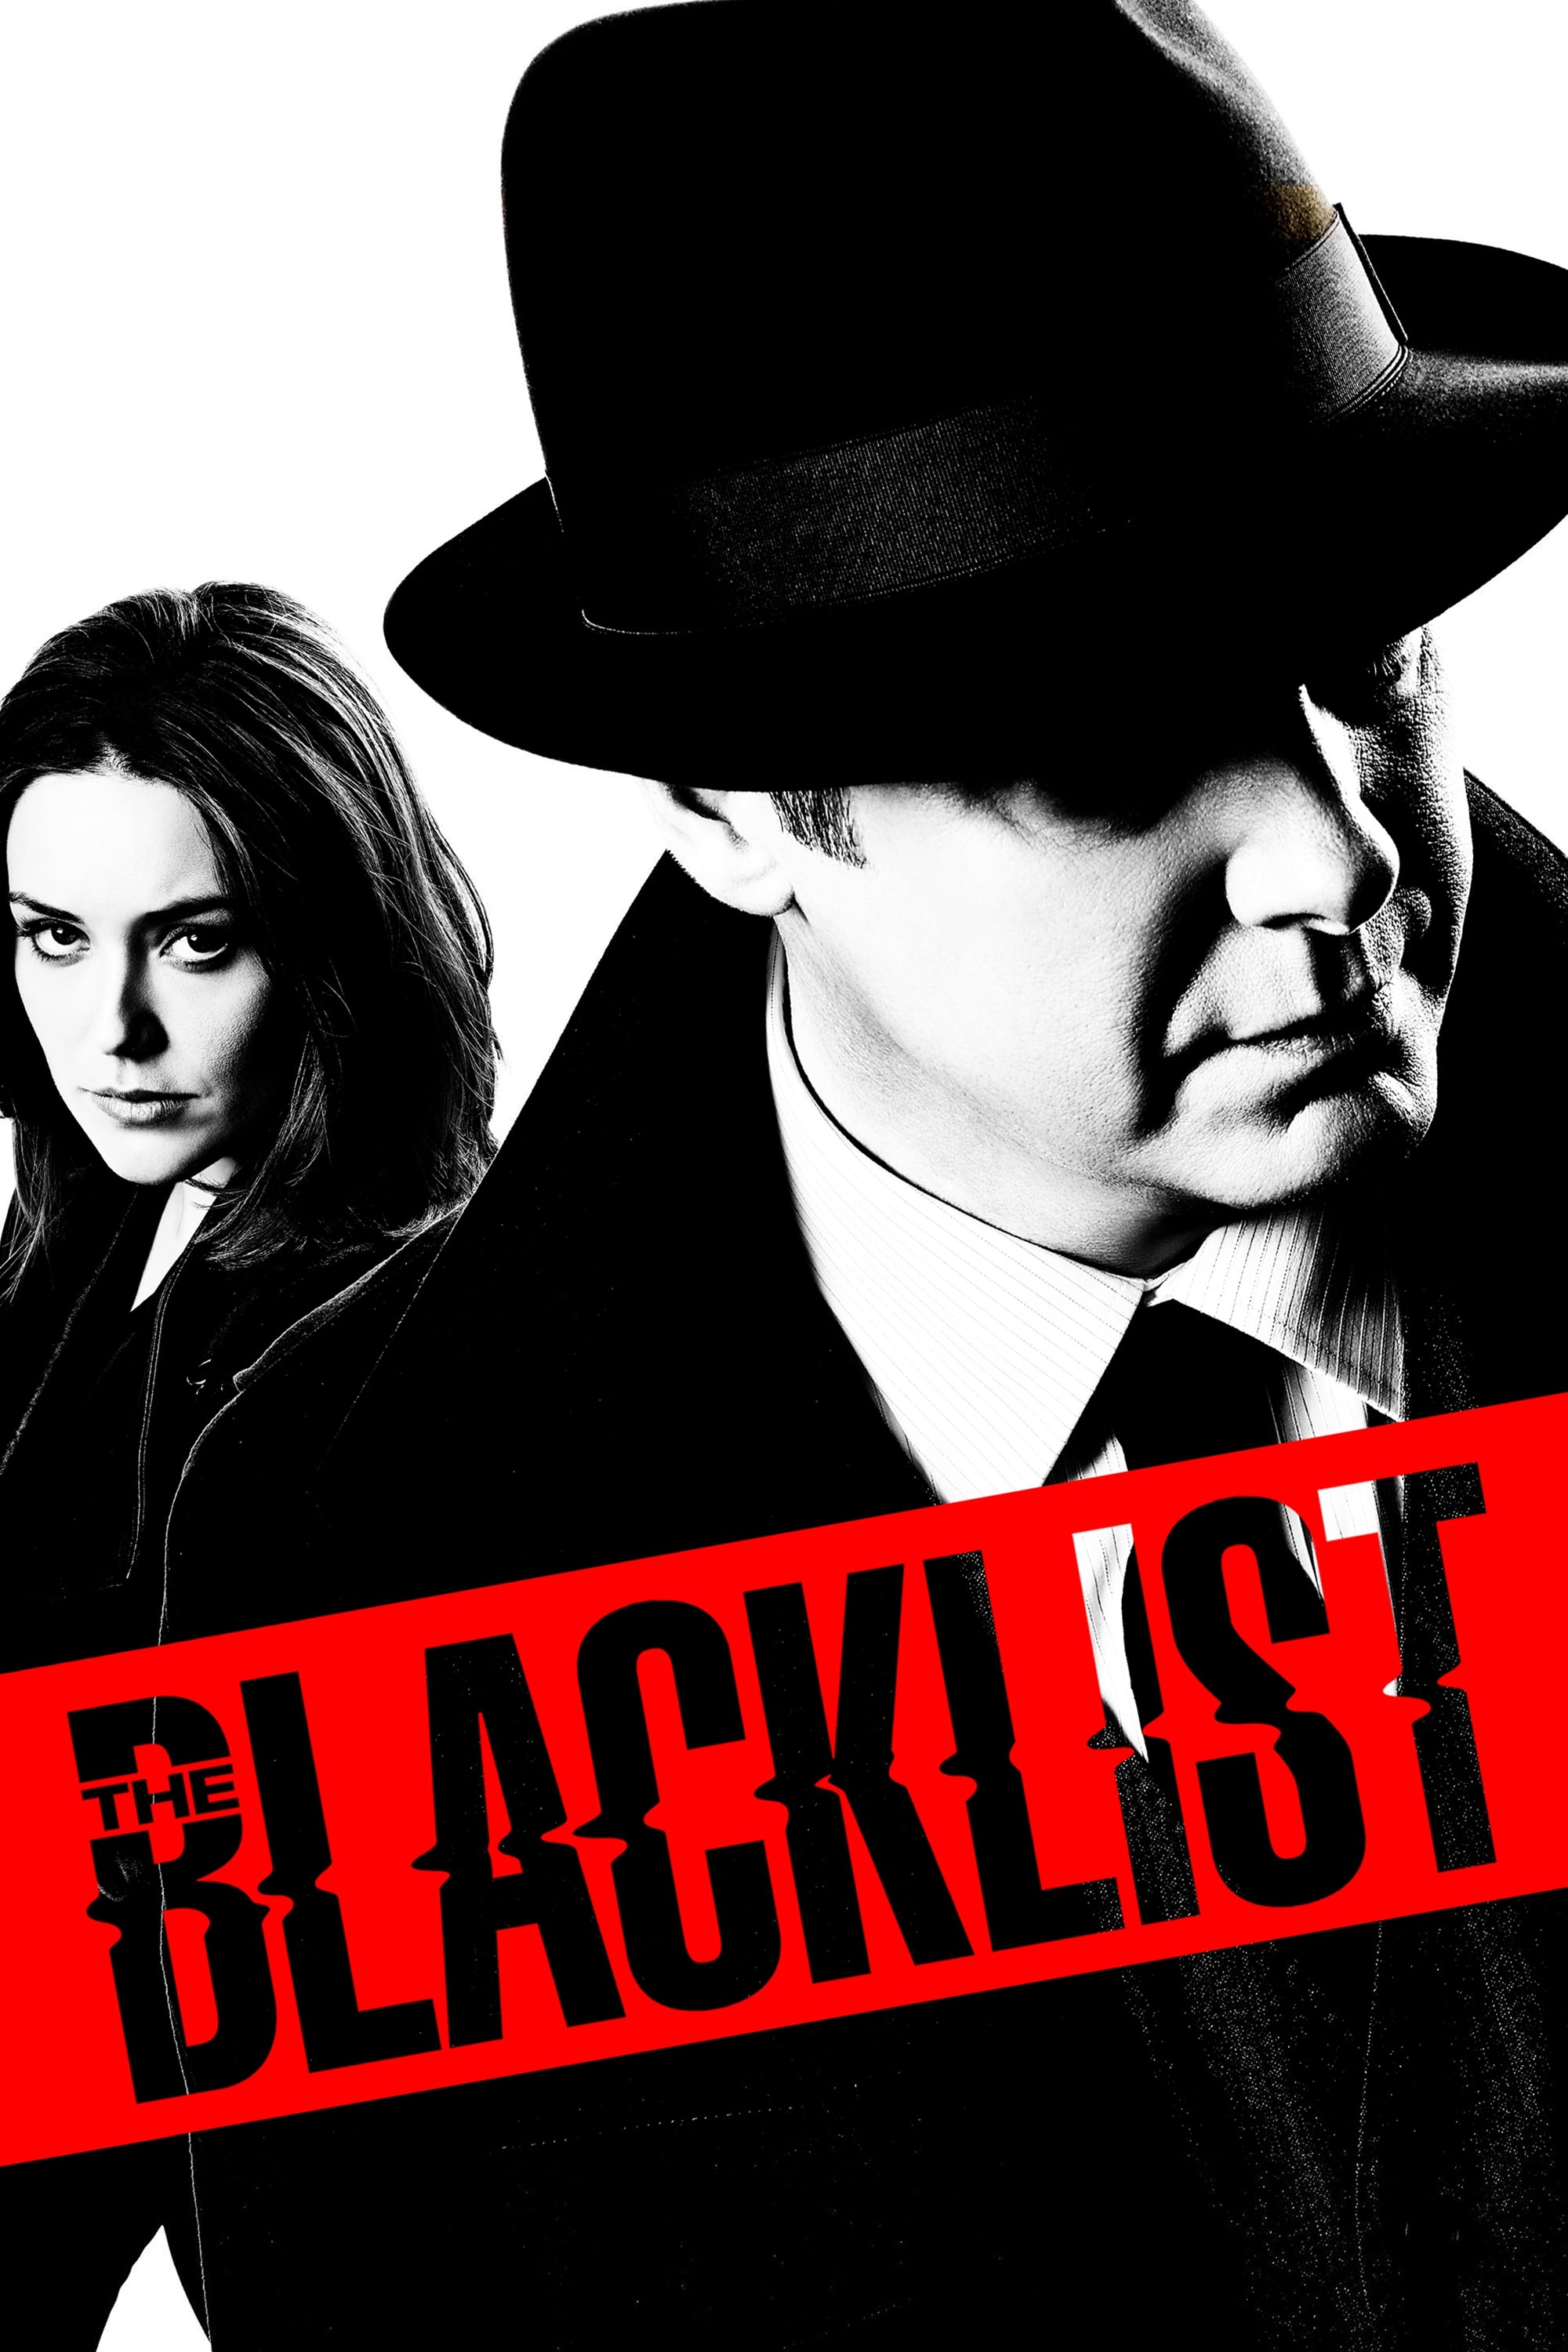 The Blacklist – Episode 9×20 Online Free